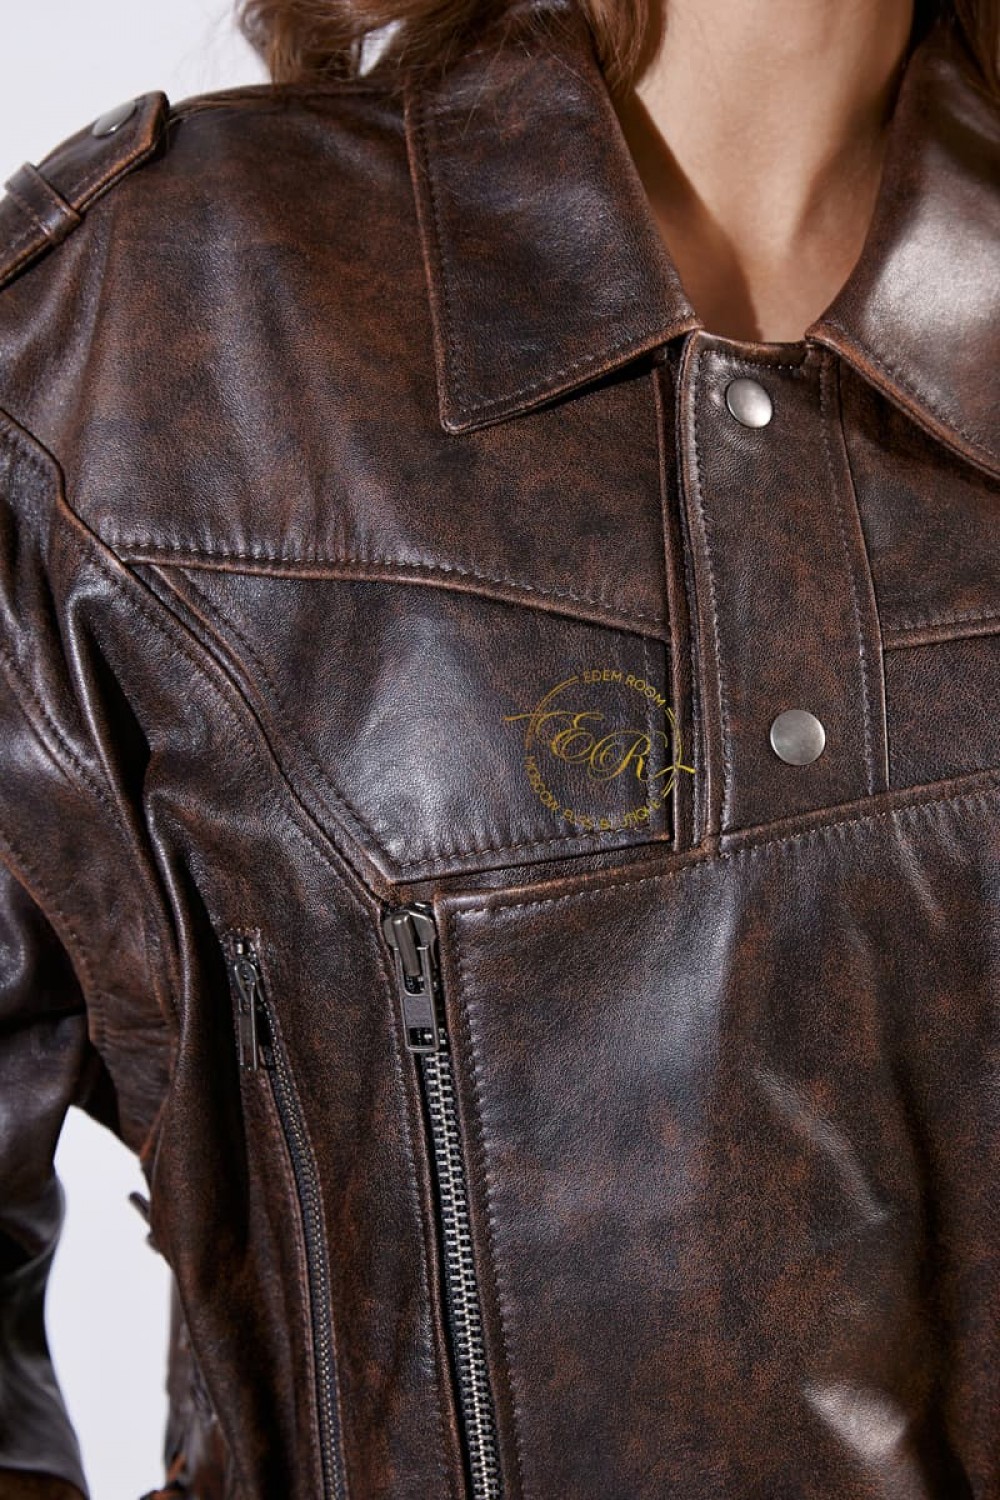 Кожаная куртка - жилетка из винтажной кожи